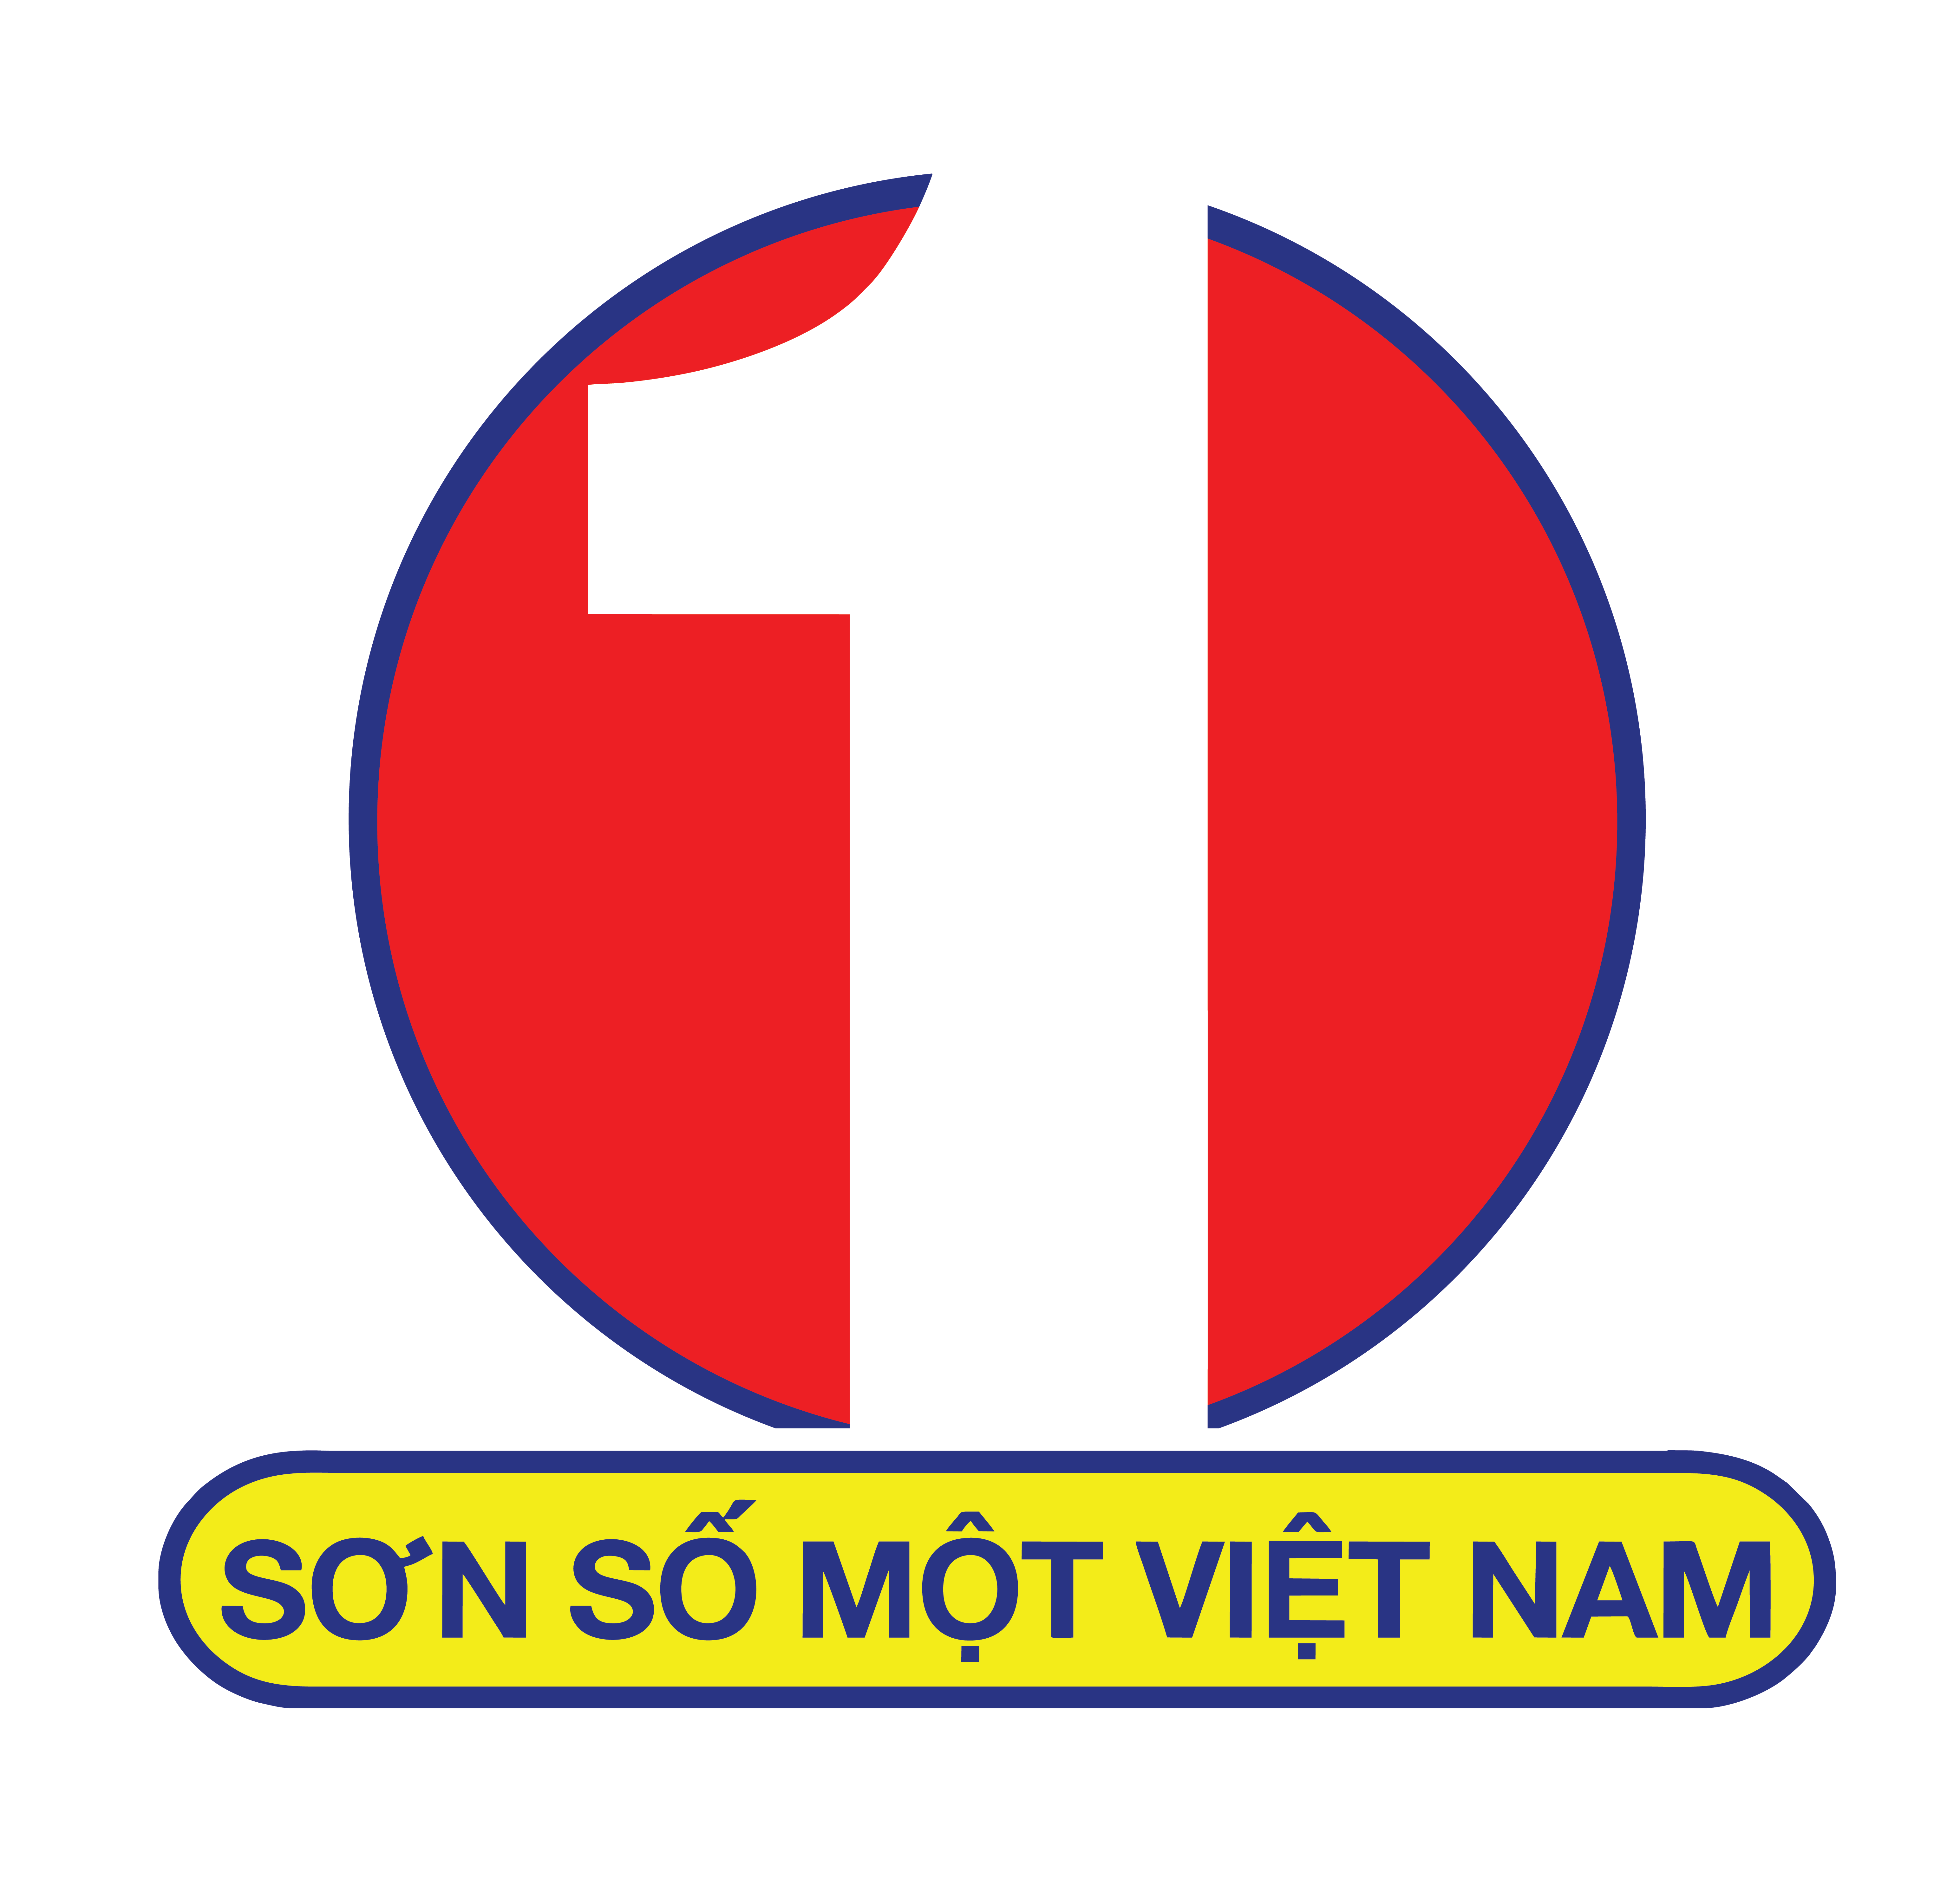 Sơn Số 1 Việt Nam